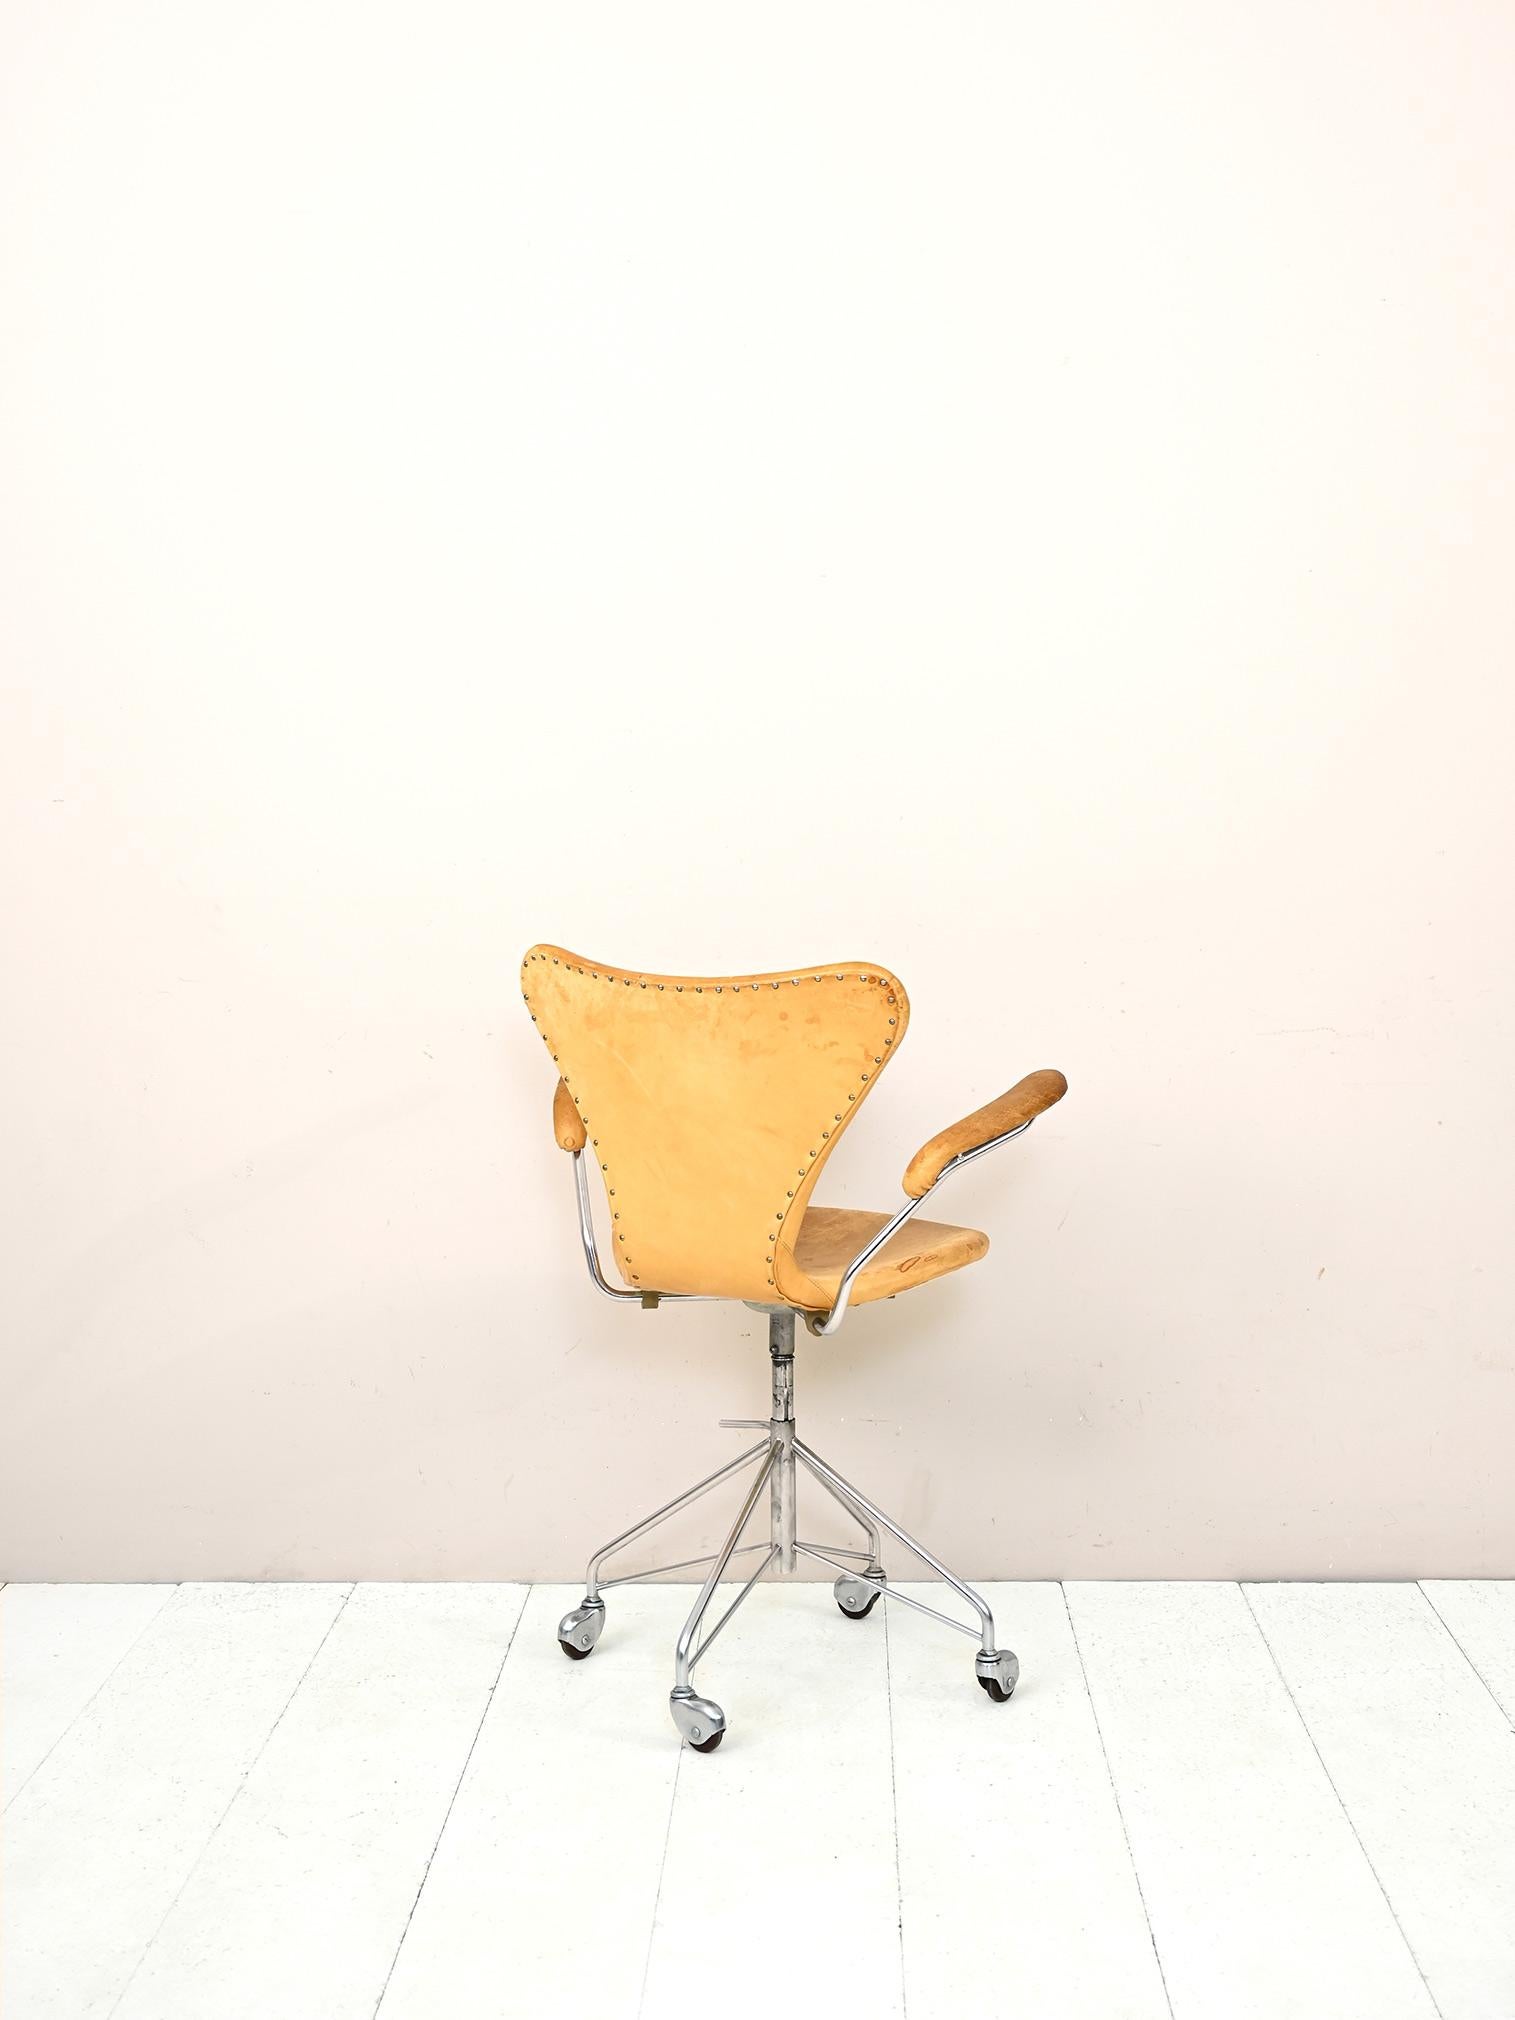 Danish 1950s Office Chair Model 3217 by Arne Jacobsen